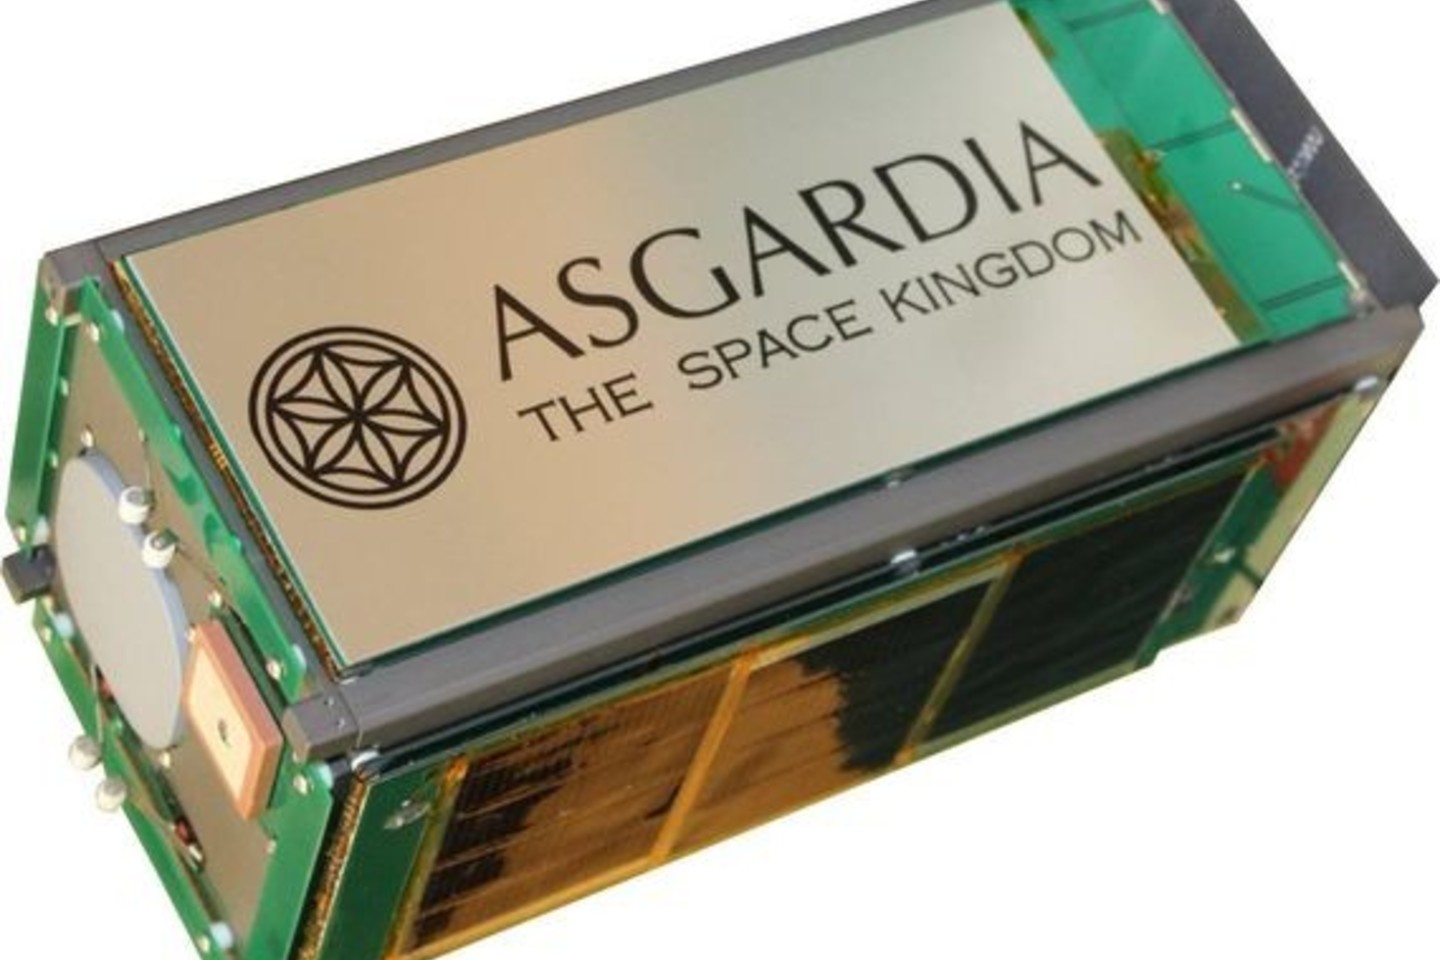  Laikas parodys, ar Kosminė Asgardijos karalystė taps pirmąja kosmose įsikūrusia tauta, ar liks tiesiog orbitoje skriejančiu standžiuoju disku.<br> asgardia.space iliustr.